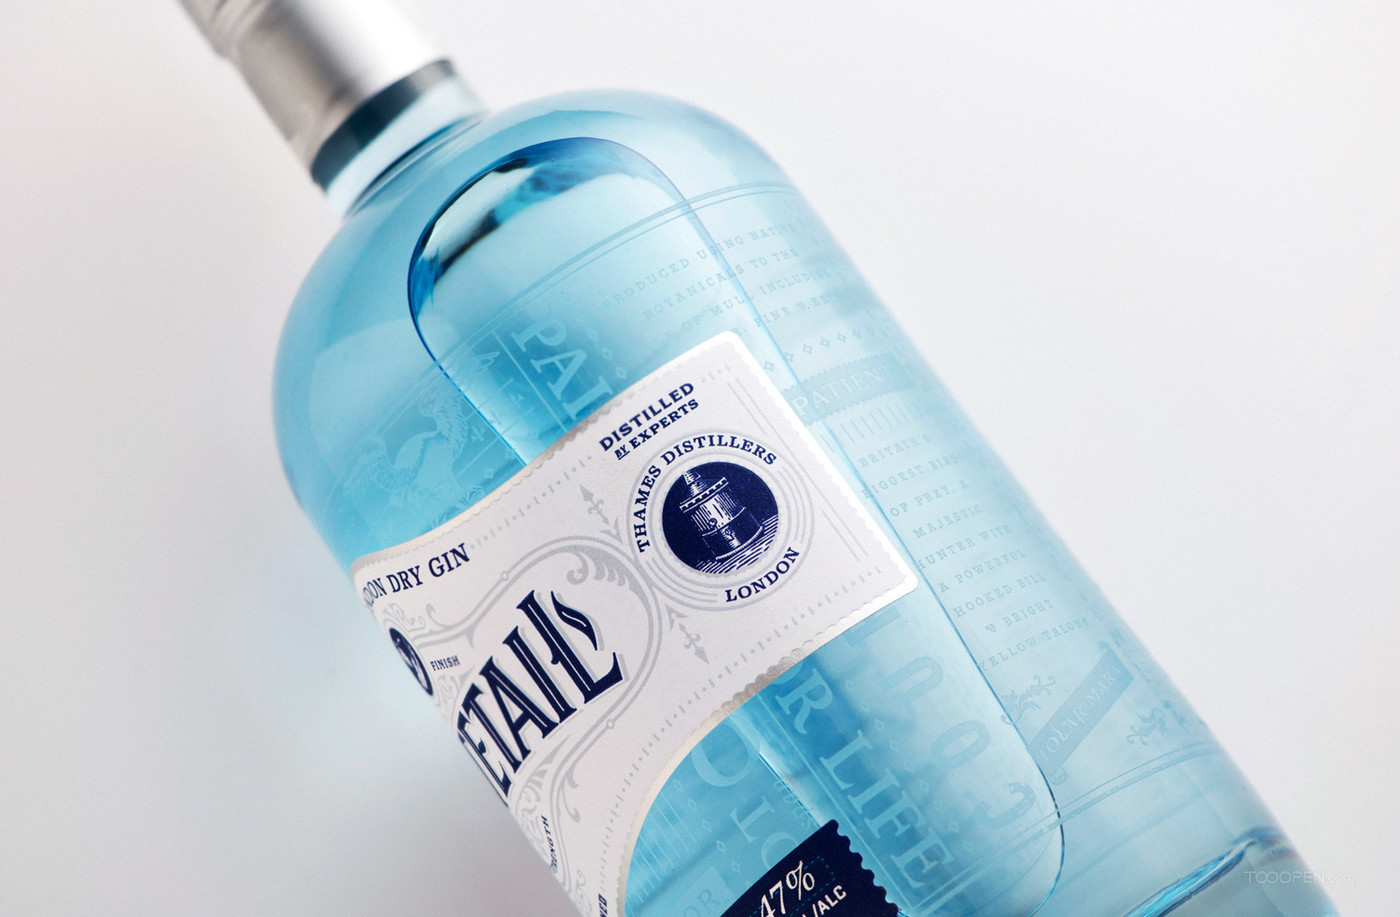 国外洋酒伦敦干杜松子酒经典蓝色瓶身包装设计欣赏-05